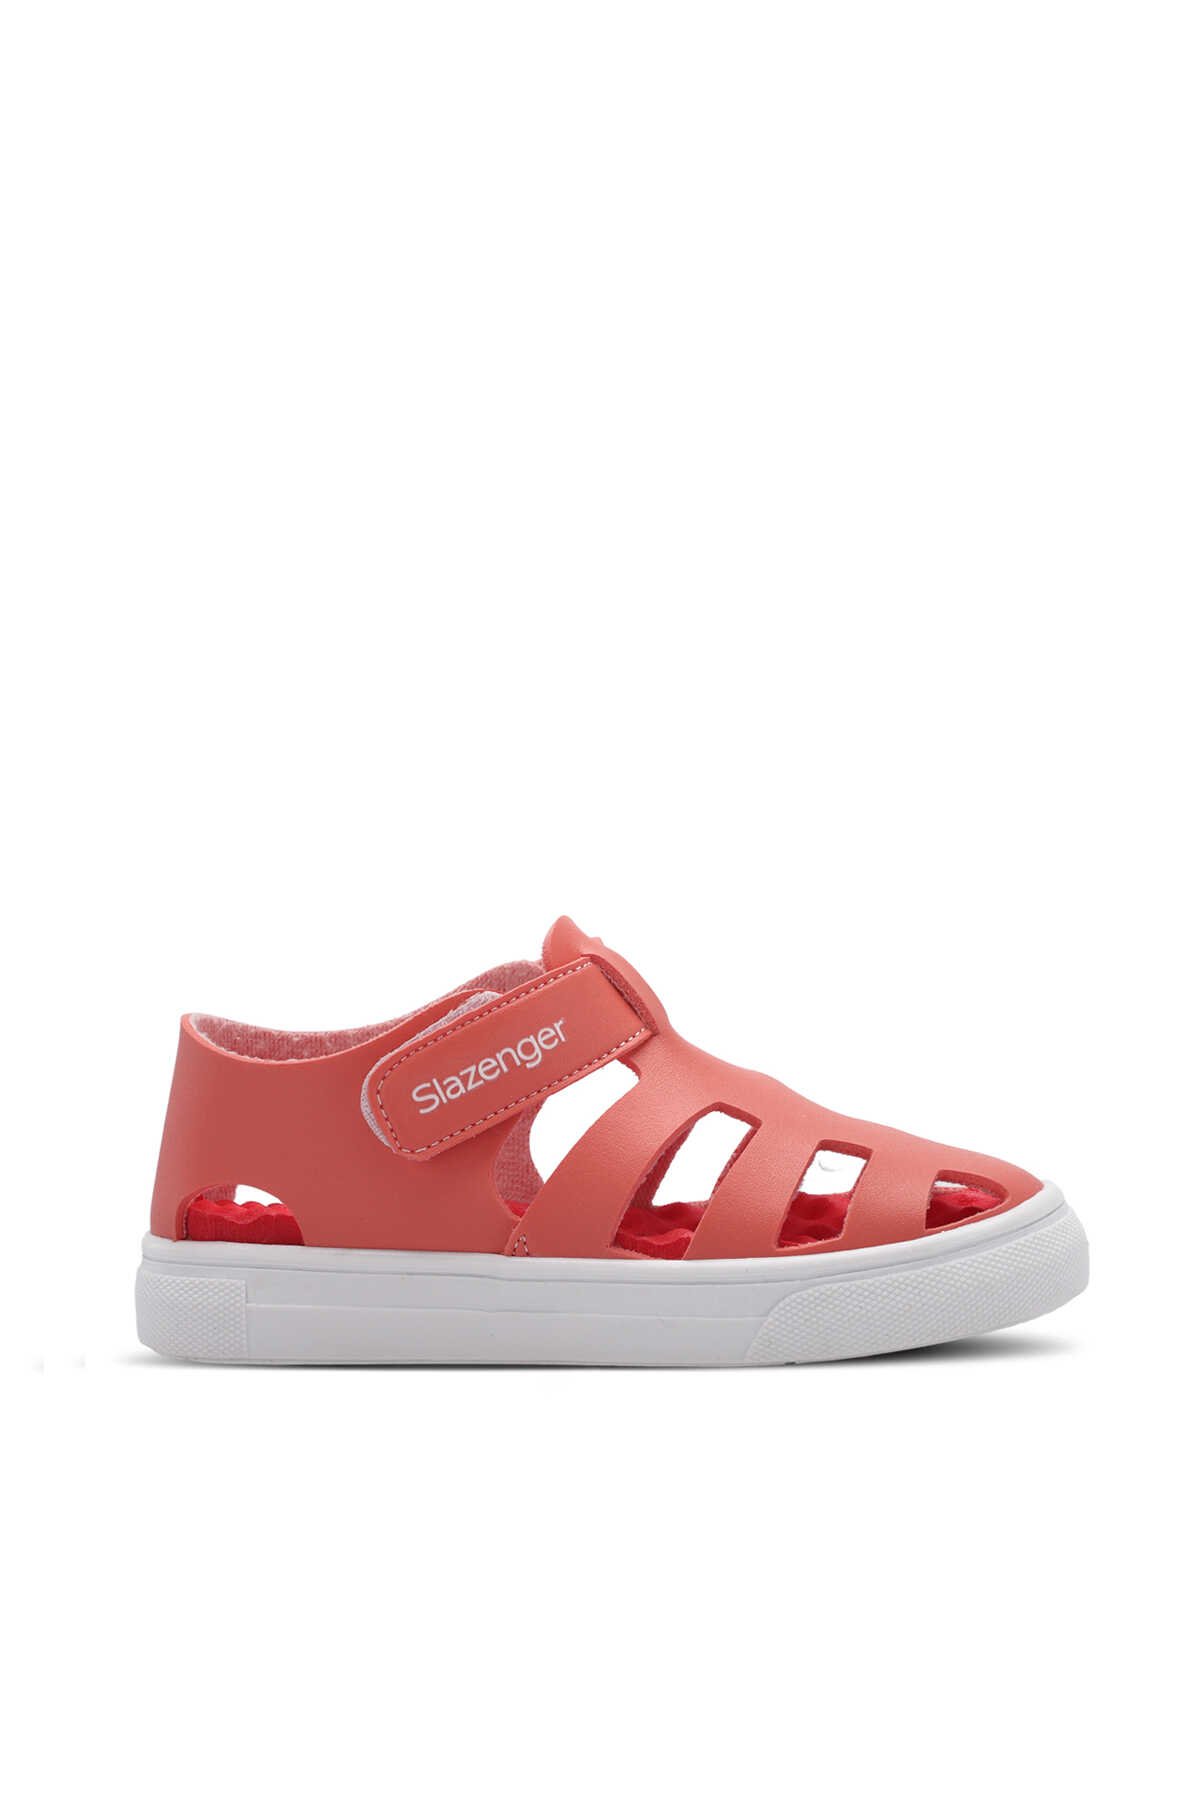 Slazenger - Slazenger KRYSTAL Kız Çocuk Sneaker Ayakkabı Nar